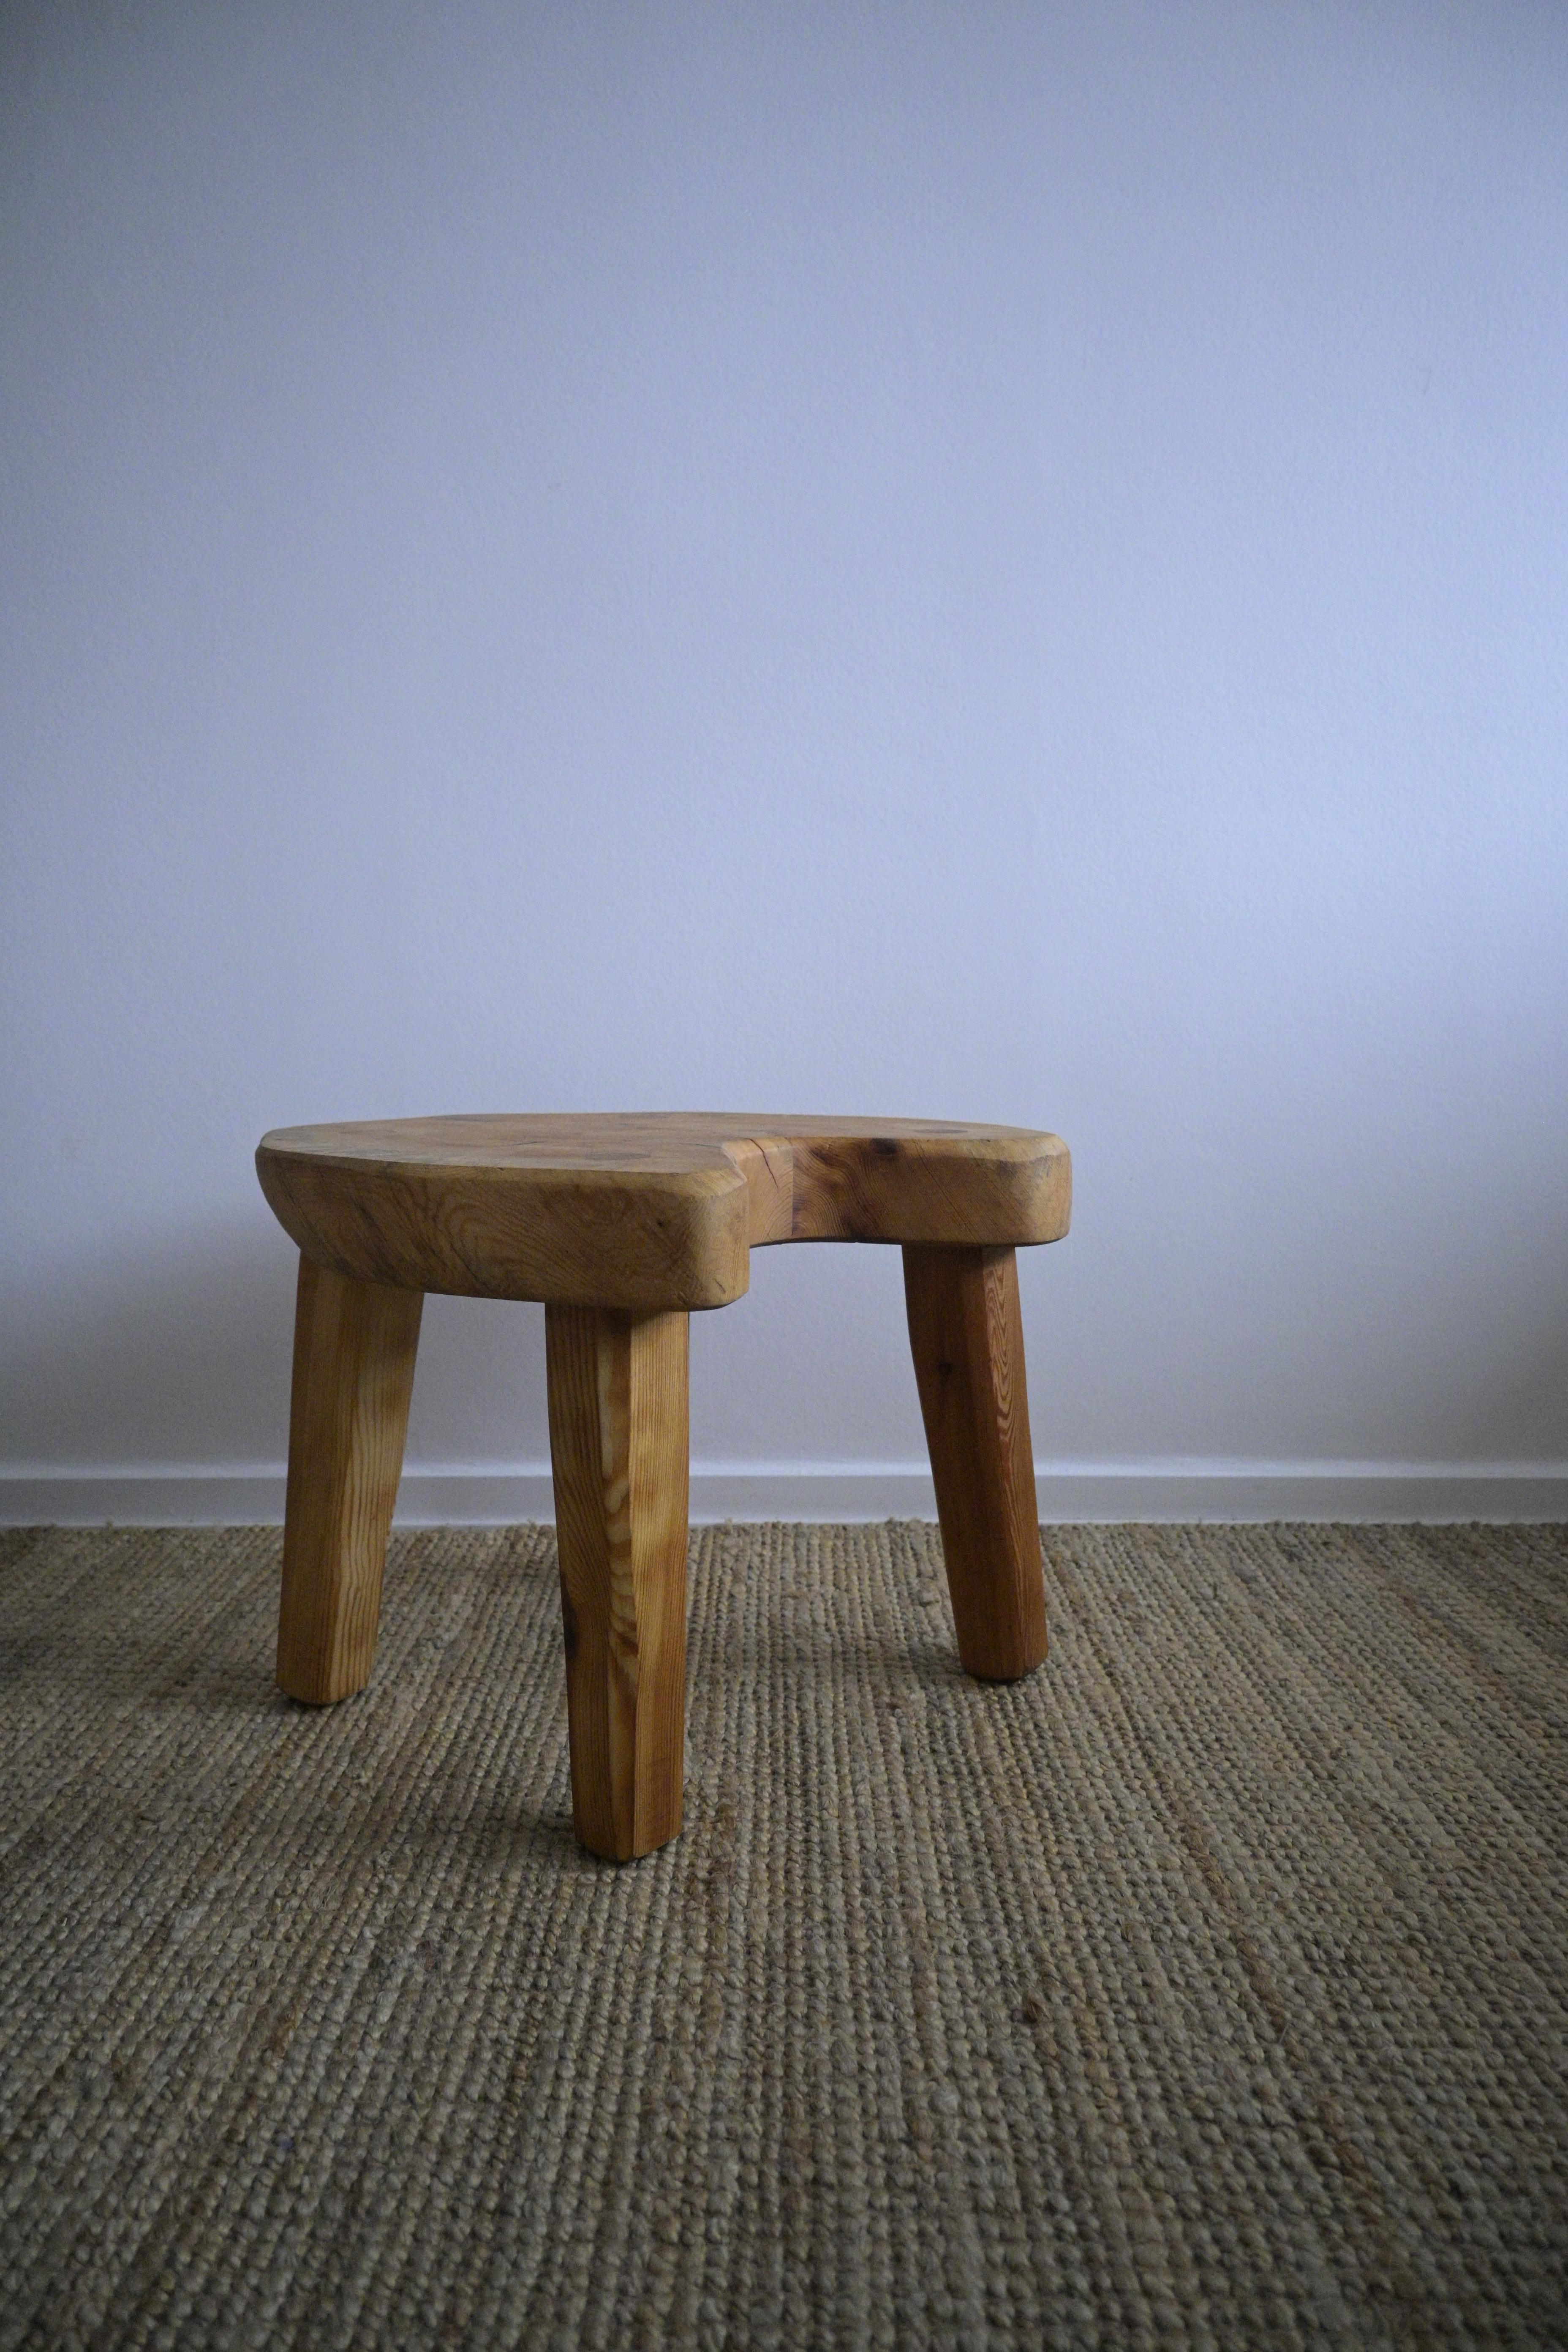 Tabouret/table d'appoint aux pieds trapus par Stig Sandqvist, The Table Company, Suède 1960

Fabriqué en bois de pin.

Il a été élargi, de sorte que sa taille est désormais plus importante qu'auparavant.

Restauré avec soin dans l'état où il se